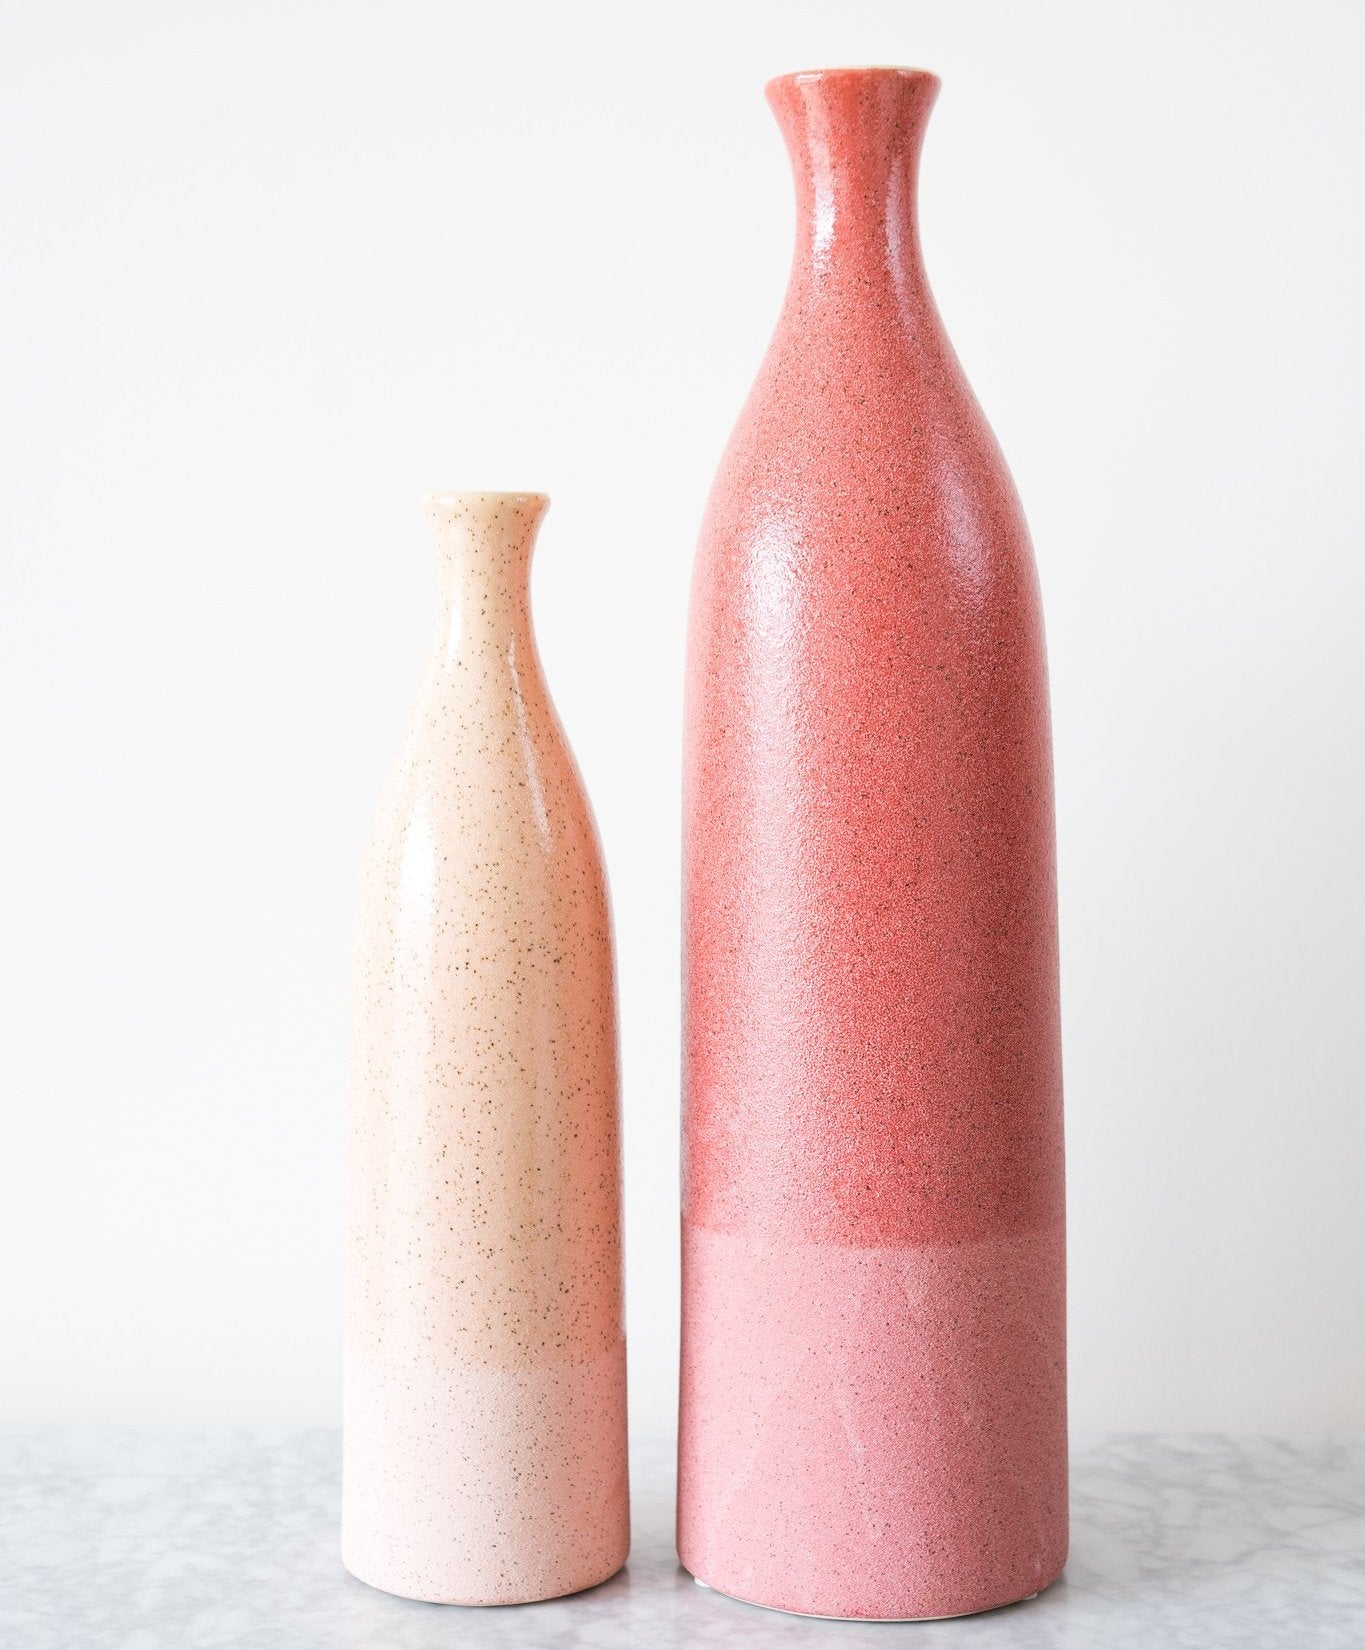 Handcrafted with ceramic stoneware, Dual Texture Ceramic Vase